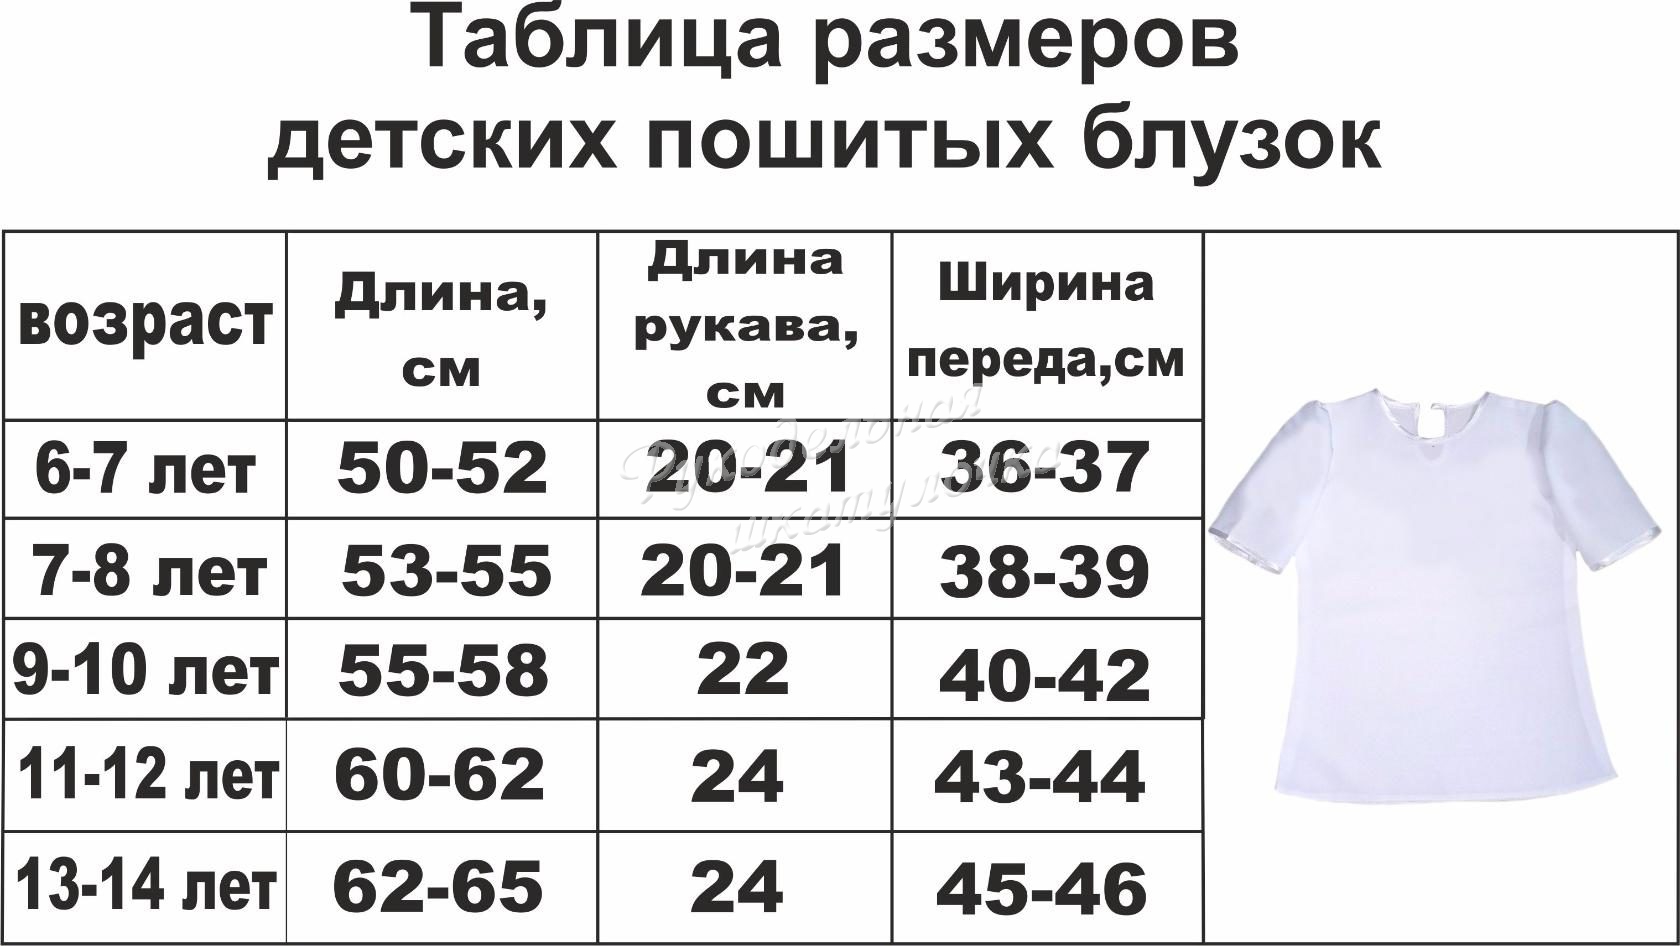 Детские размеры кофты. Размер блузки таблица. Размерная сетка детских блузок. Размеры детских блузок. Размерная сетка детской блузки.